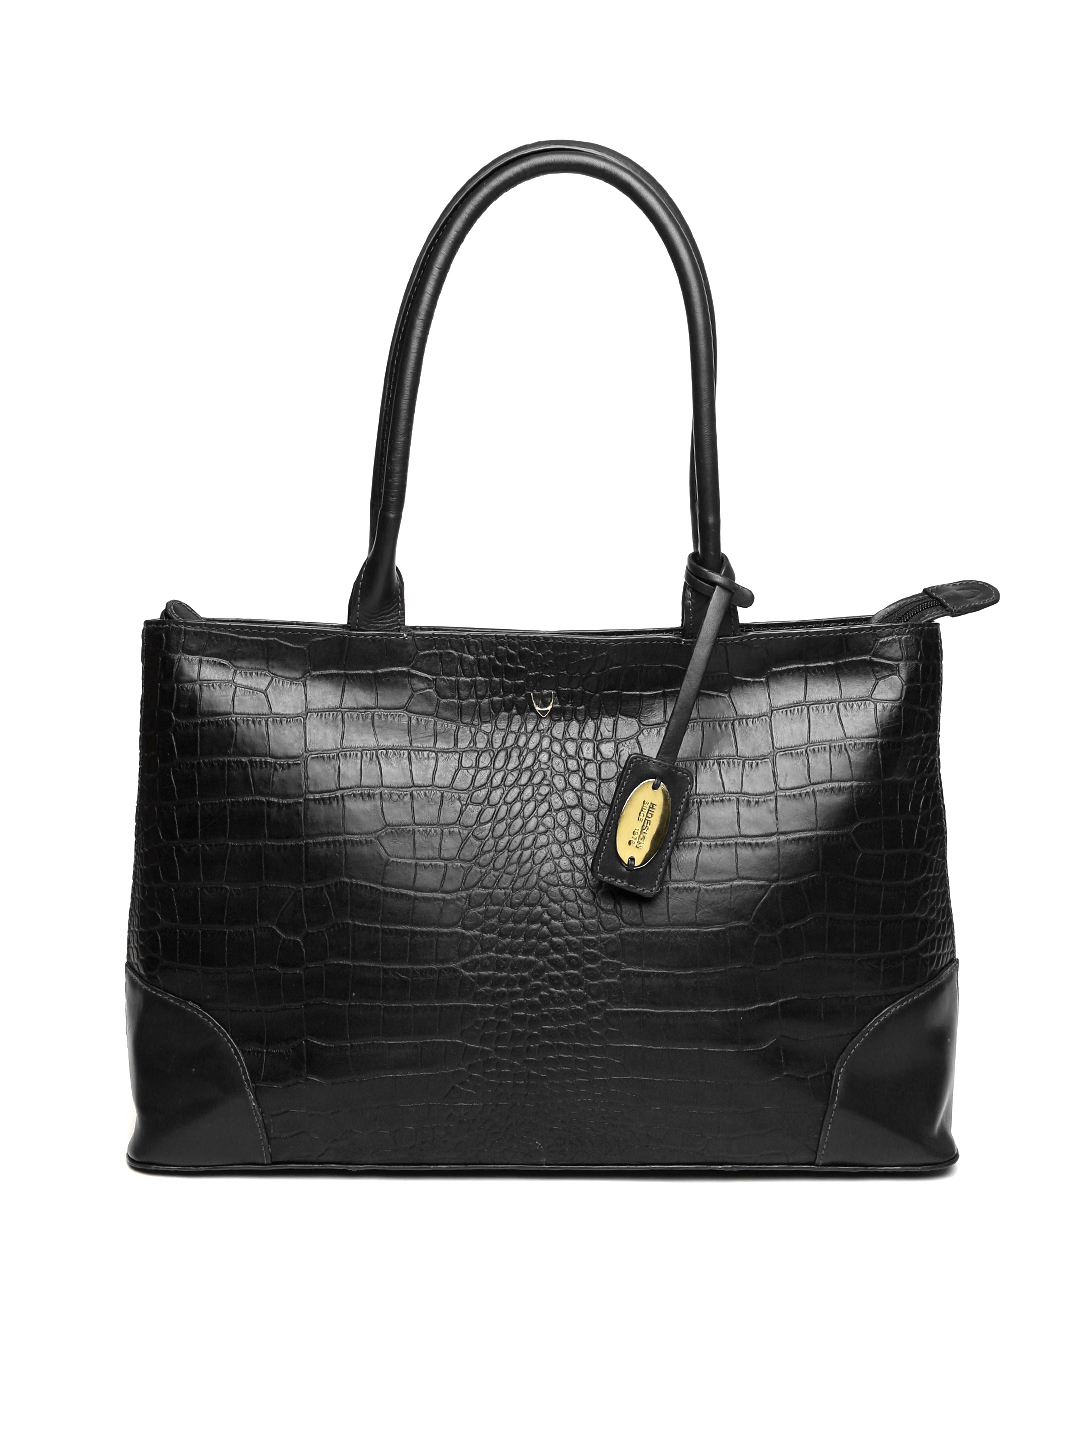 Hidesign Black Textured Leather Shoulder Bag